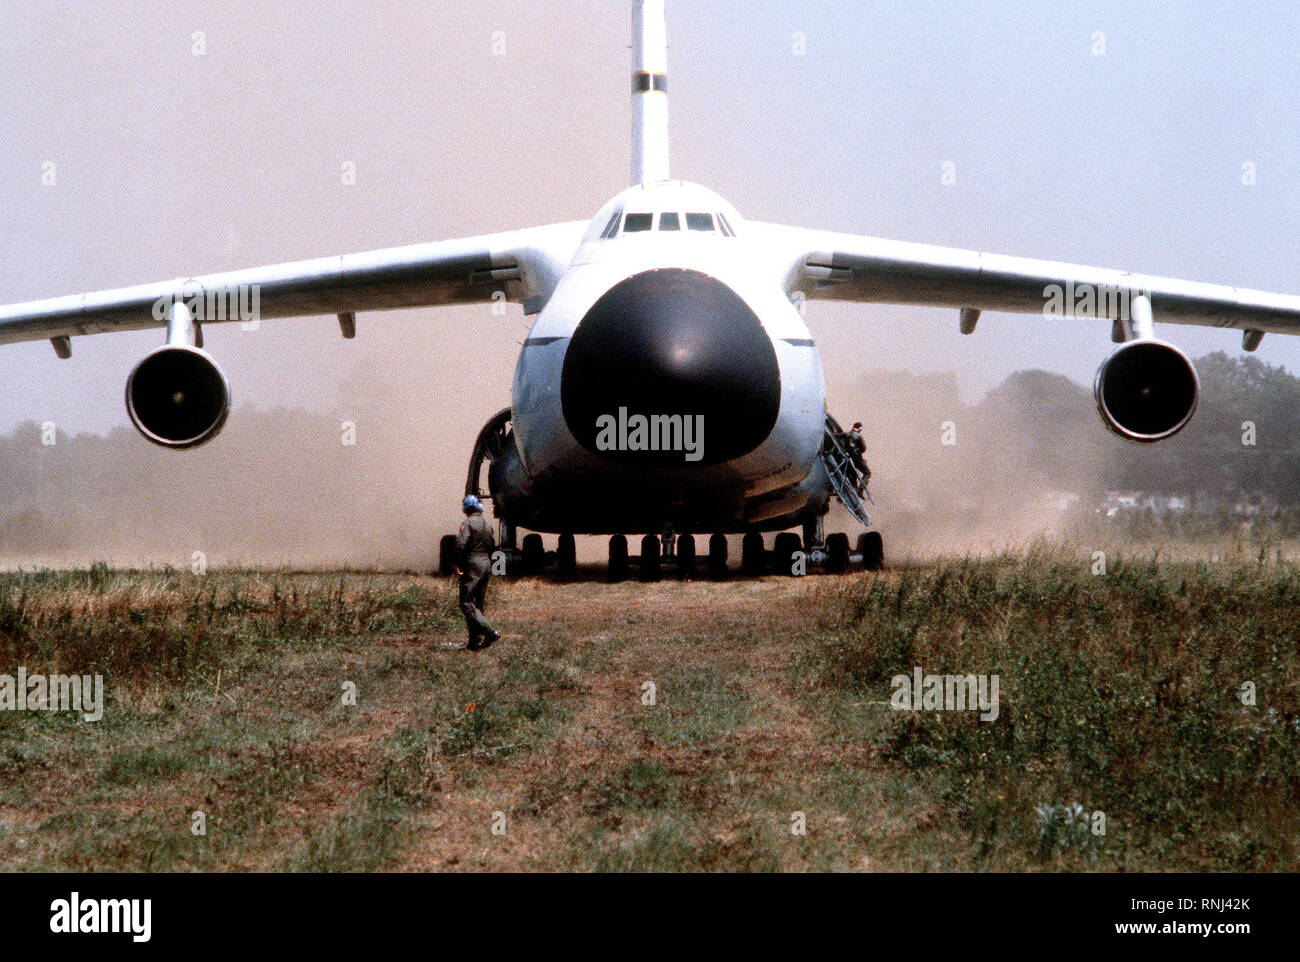 1980 - Une vue frontale d'un C-5A Galaxy de circulation au sol des aéronefs dans la terre au cours d'un test d'évaluation de l'utilité opérationnelle Banque D'Images